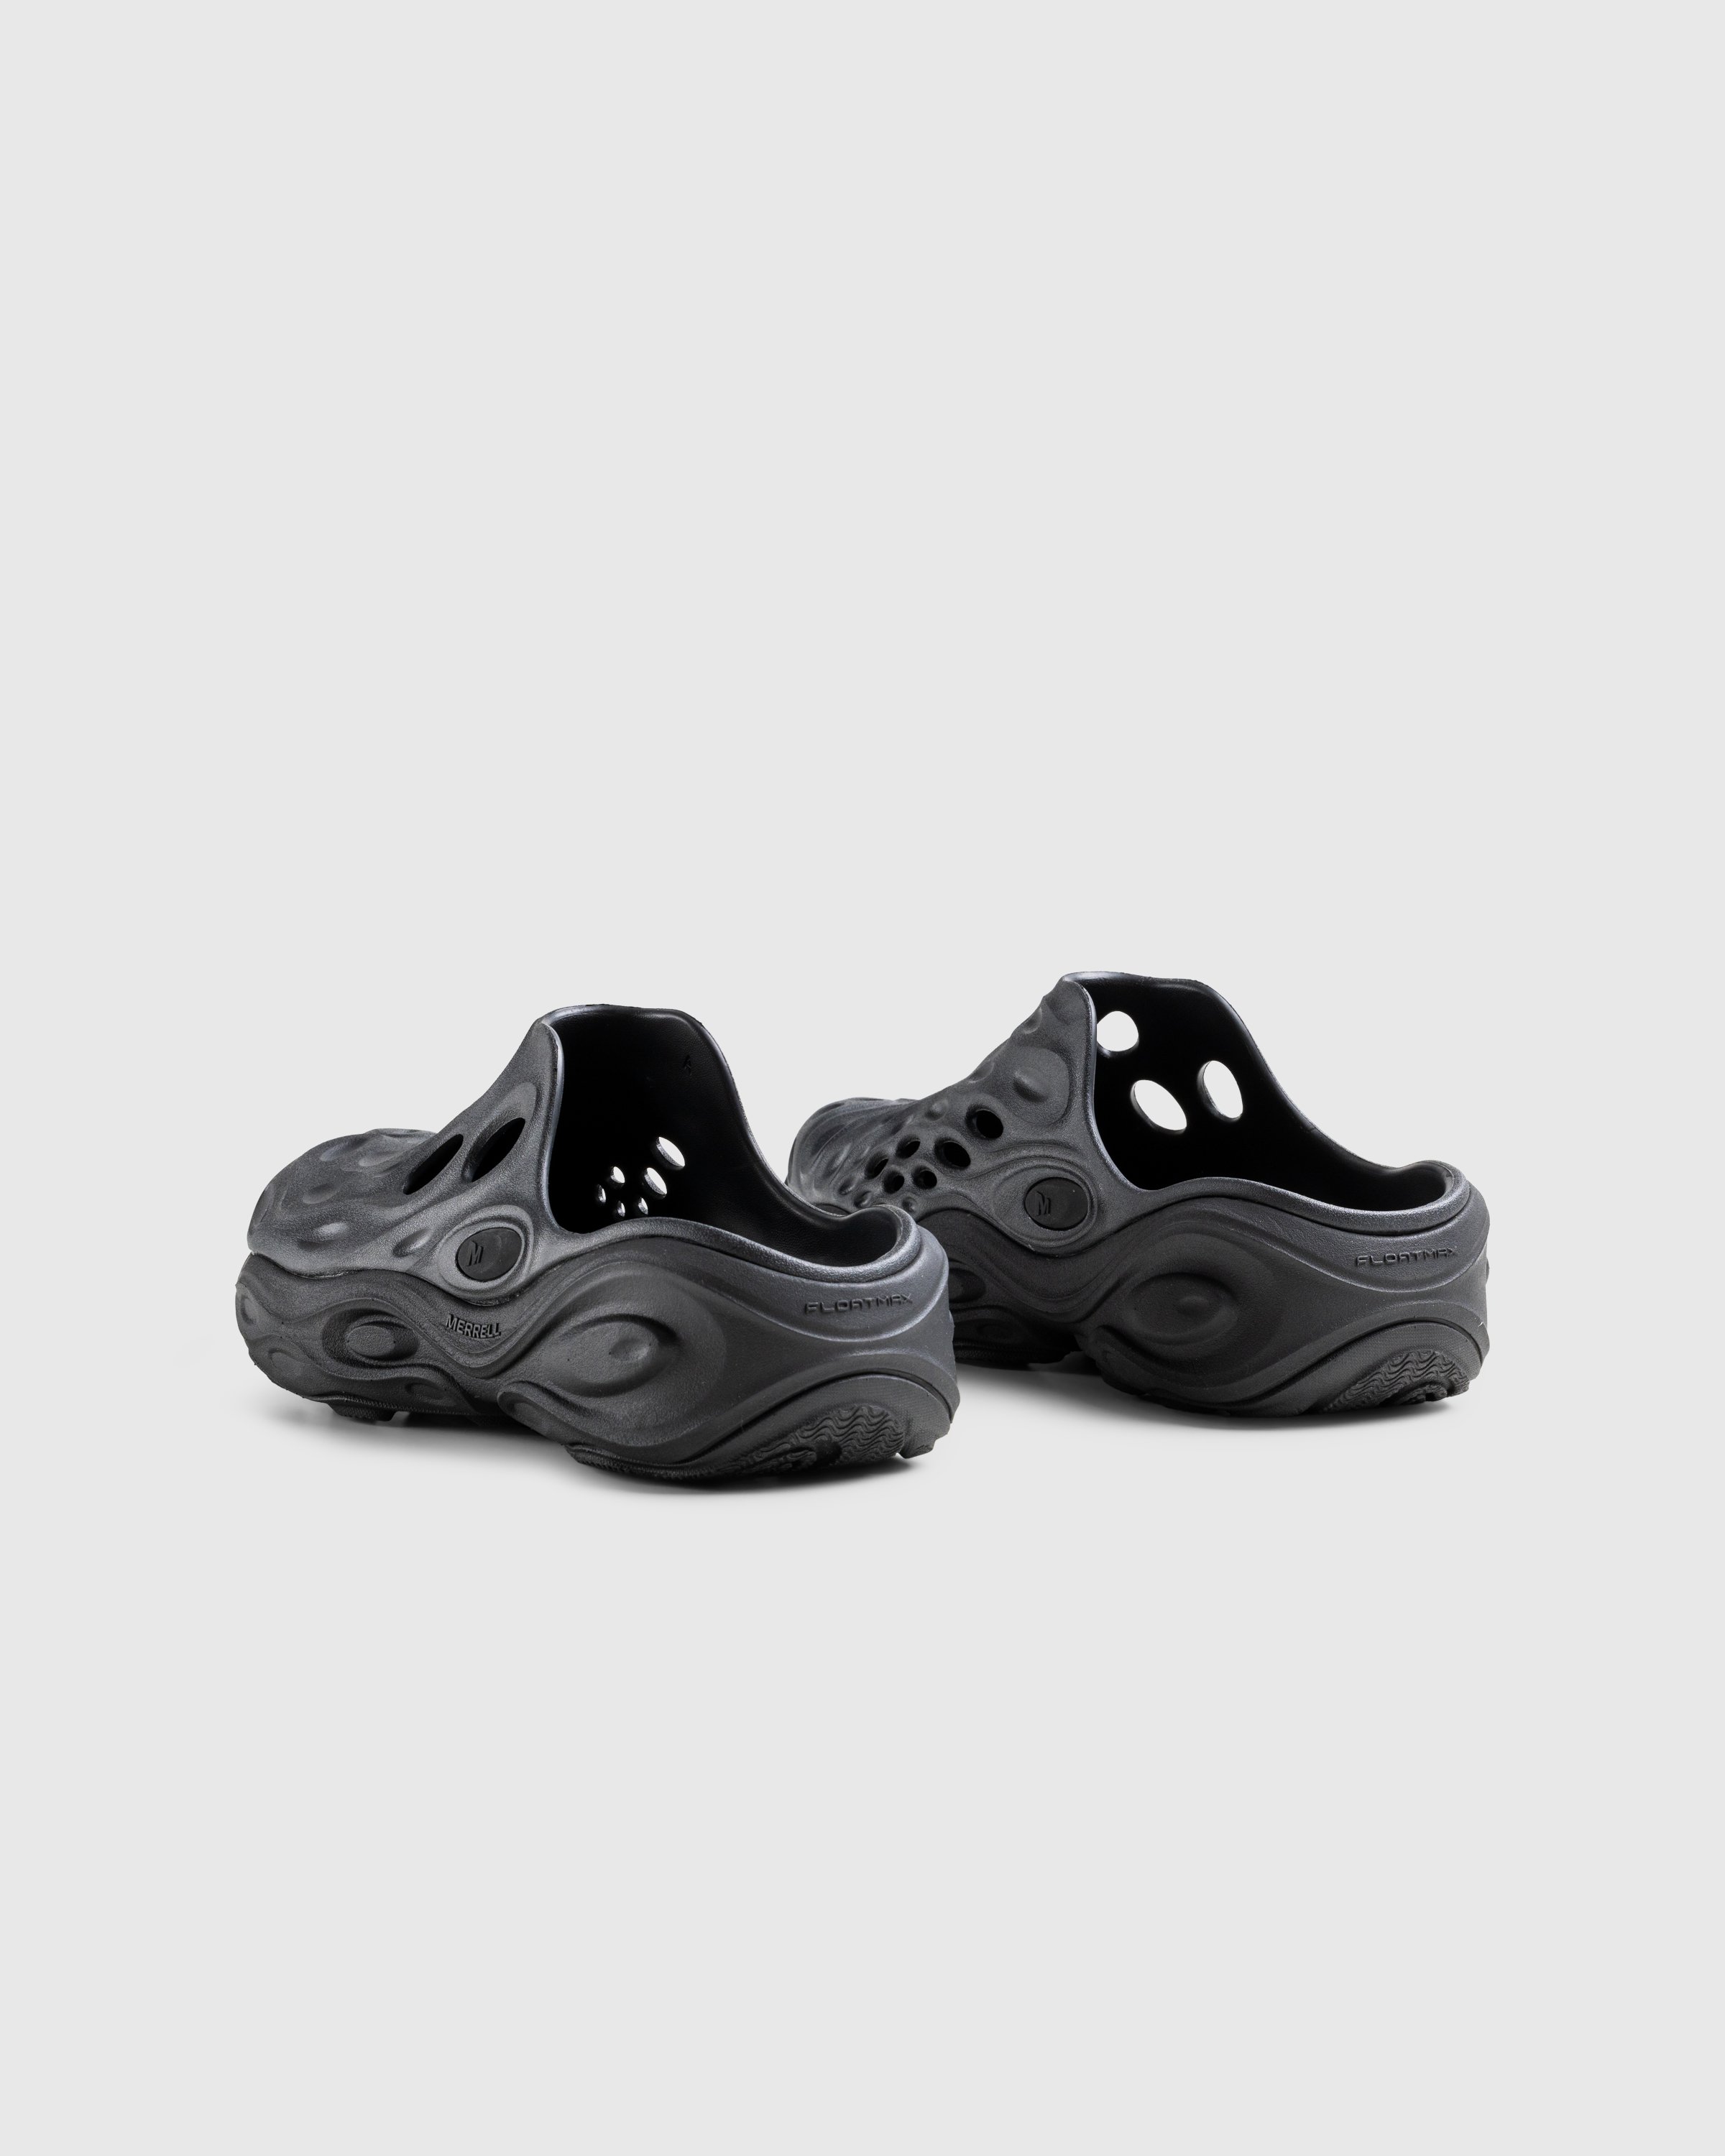 Merrell - HYDRO NEXT GEN MULE SE/TRIPLE BLACK - Footwear - Black - Image 4